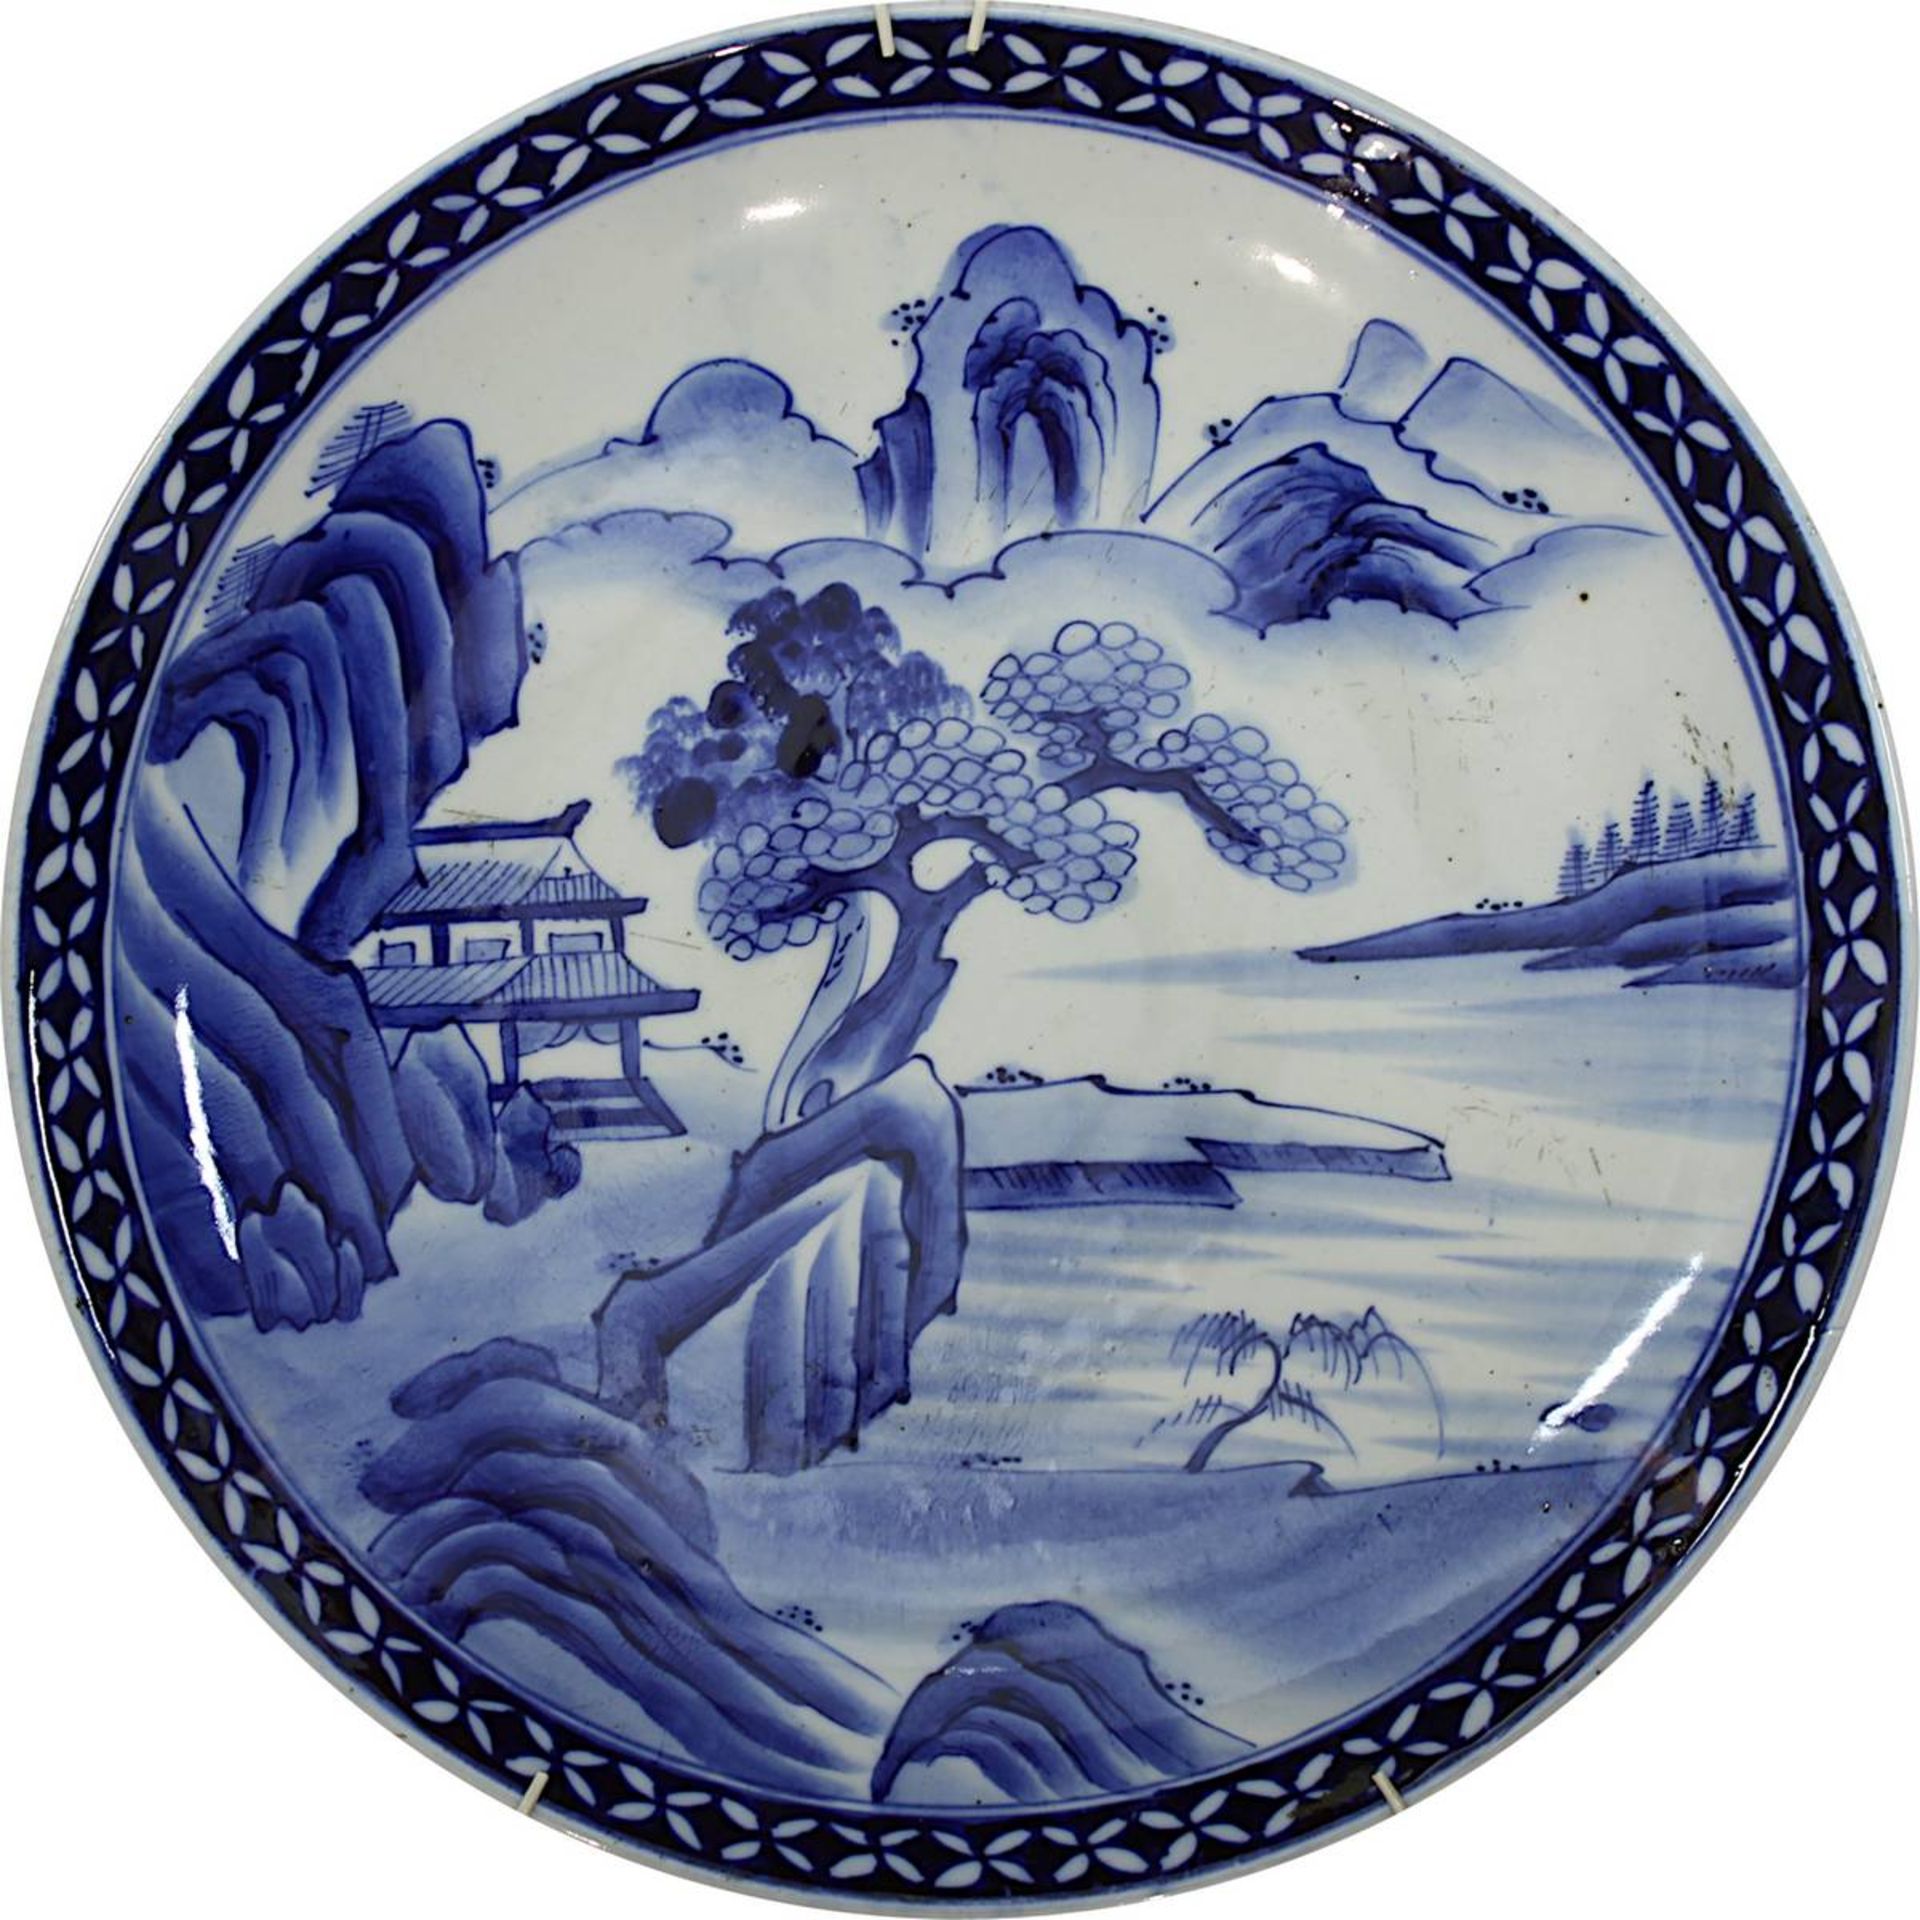 Großer chinesischer Teller mit Landschaftsansicht, China 19. Jh., Porzellan, weißer